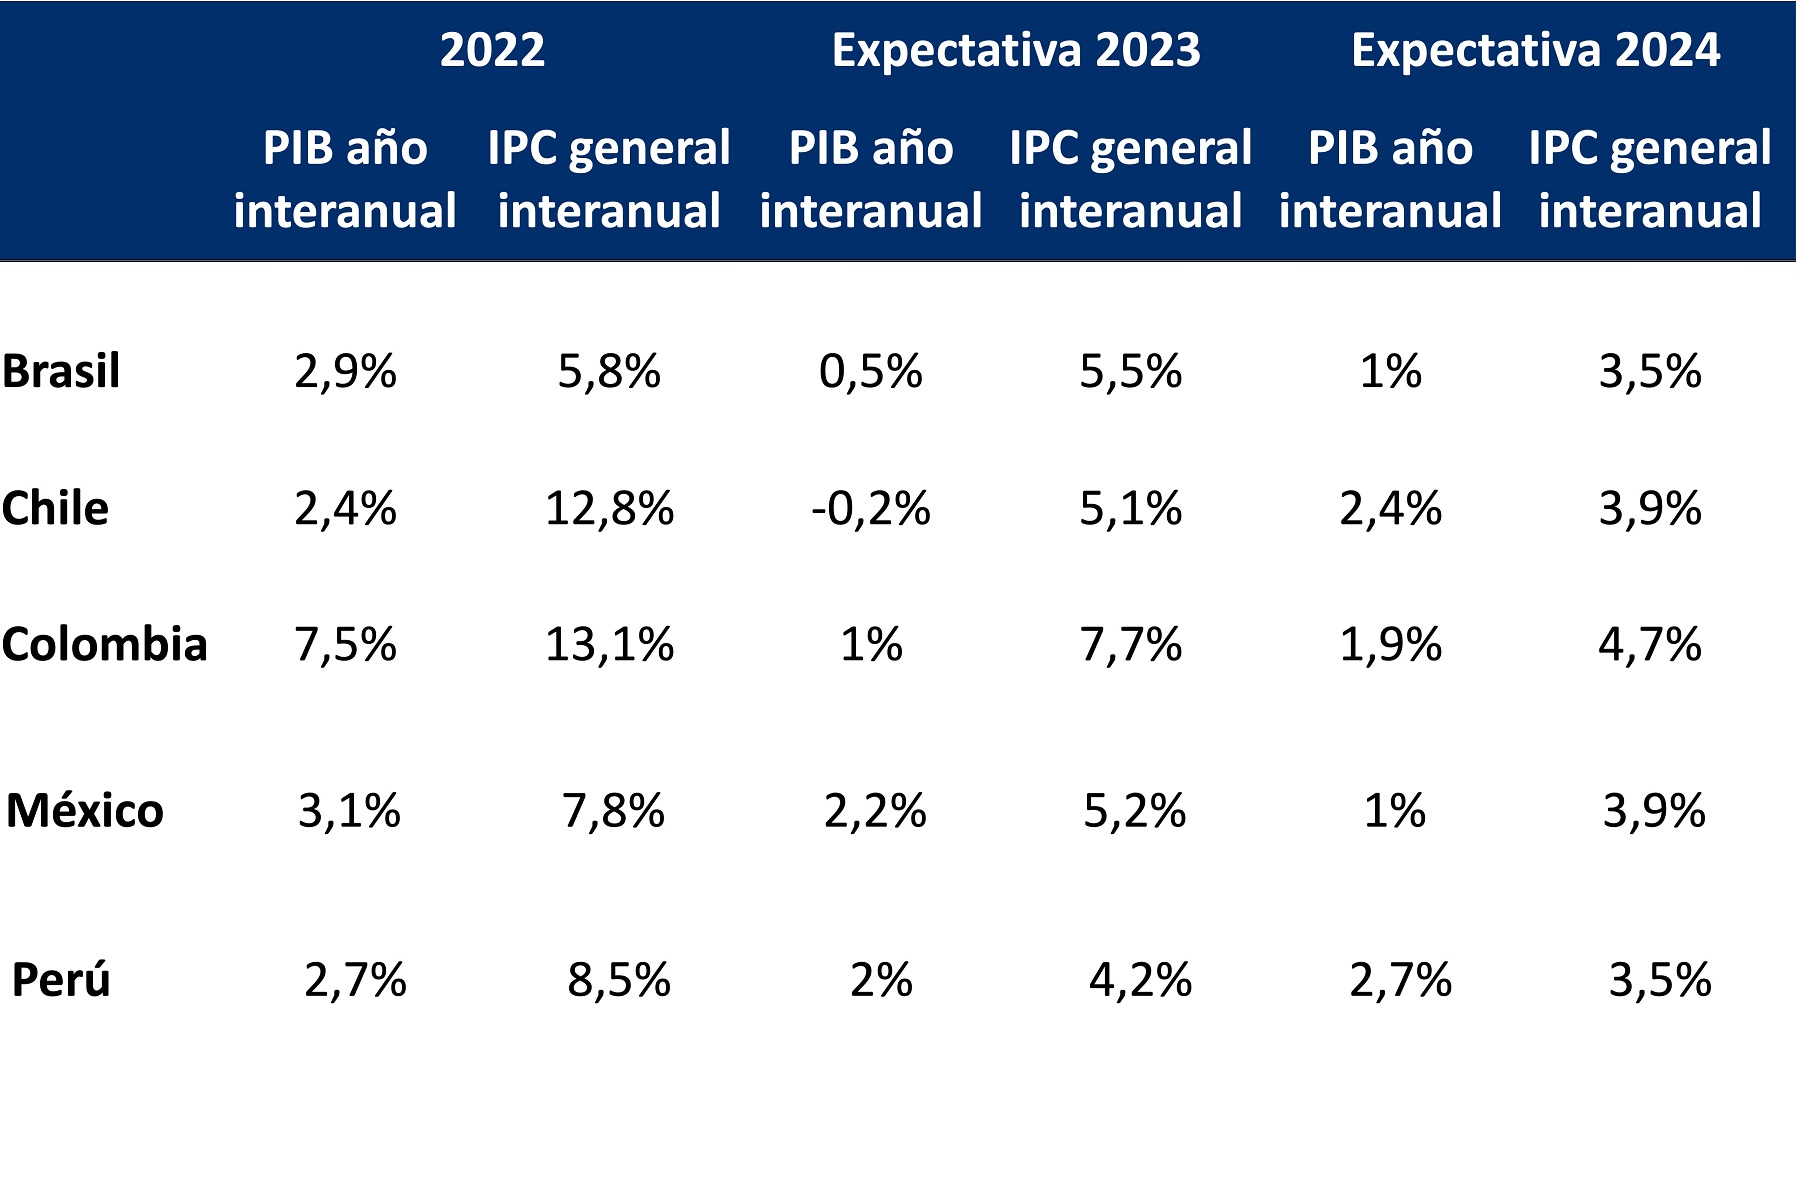 Producto Interno Bruto (PIB) y el Índice de Precios al Consumidor (IPC) interanual para 2022, y expectativas para 2023 y 2024